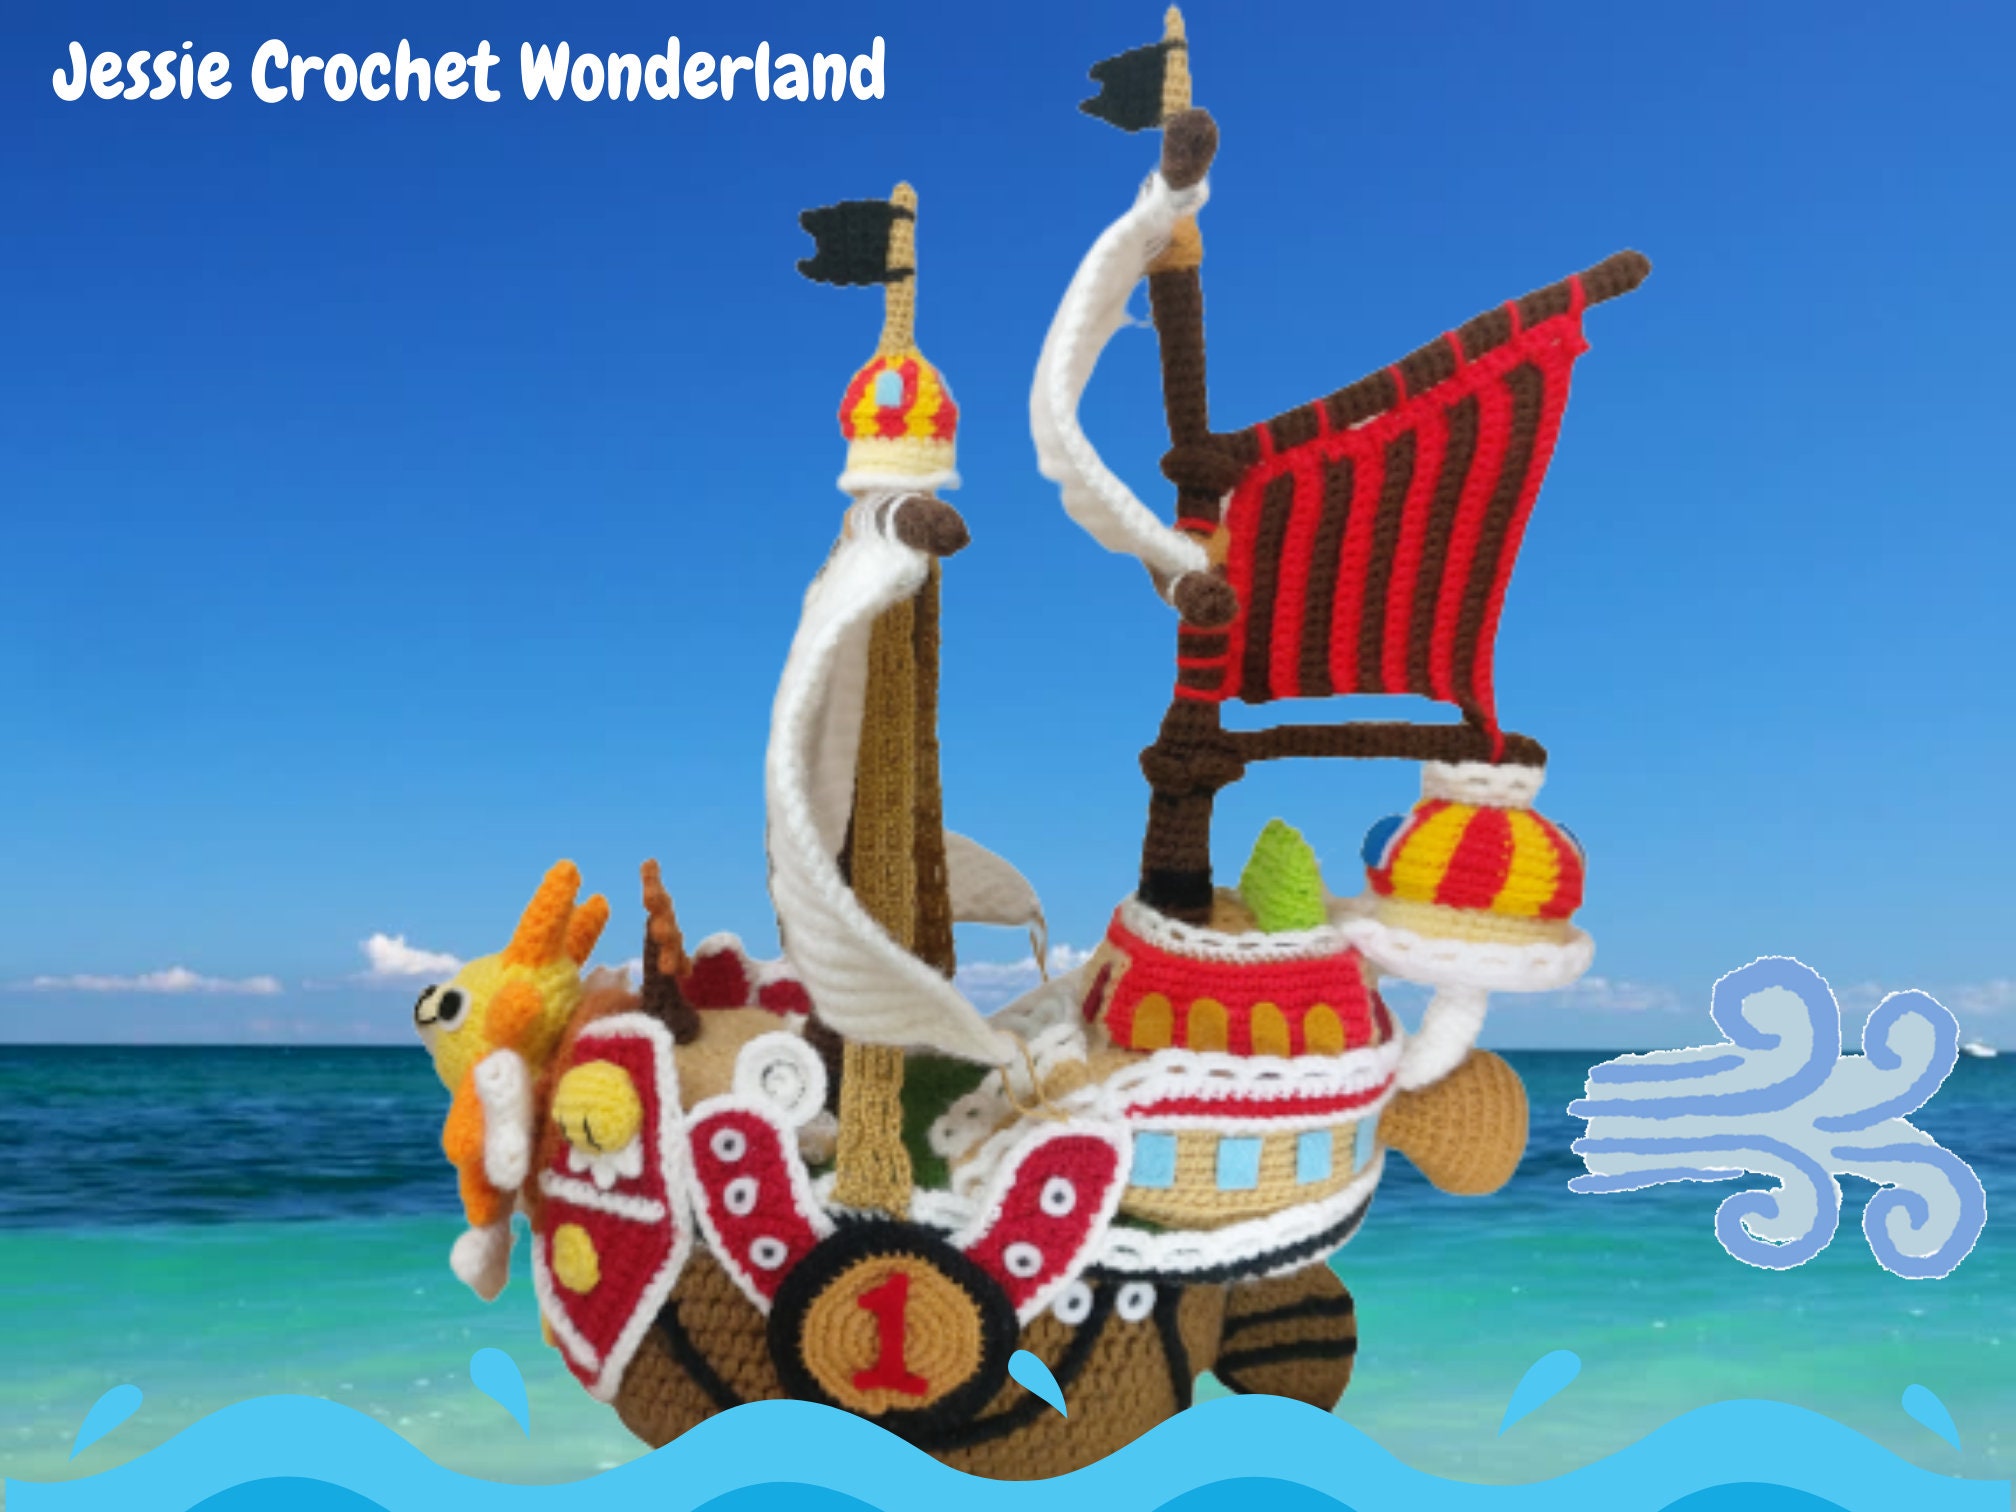 Anime One Piece Luffy THOUSAND SUNNY figura juguetes ensamblaje barco  modelo pirata barco decoración regalos coleccionables